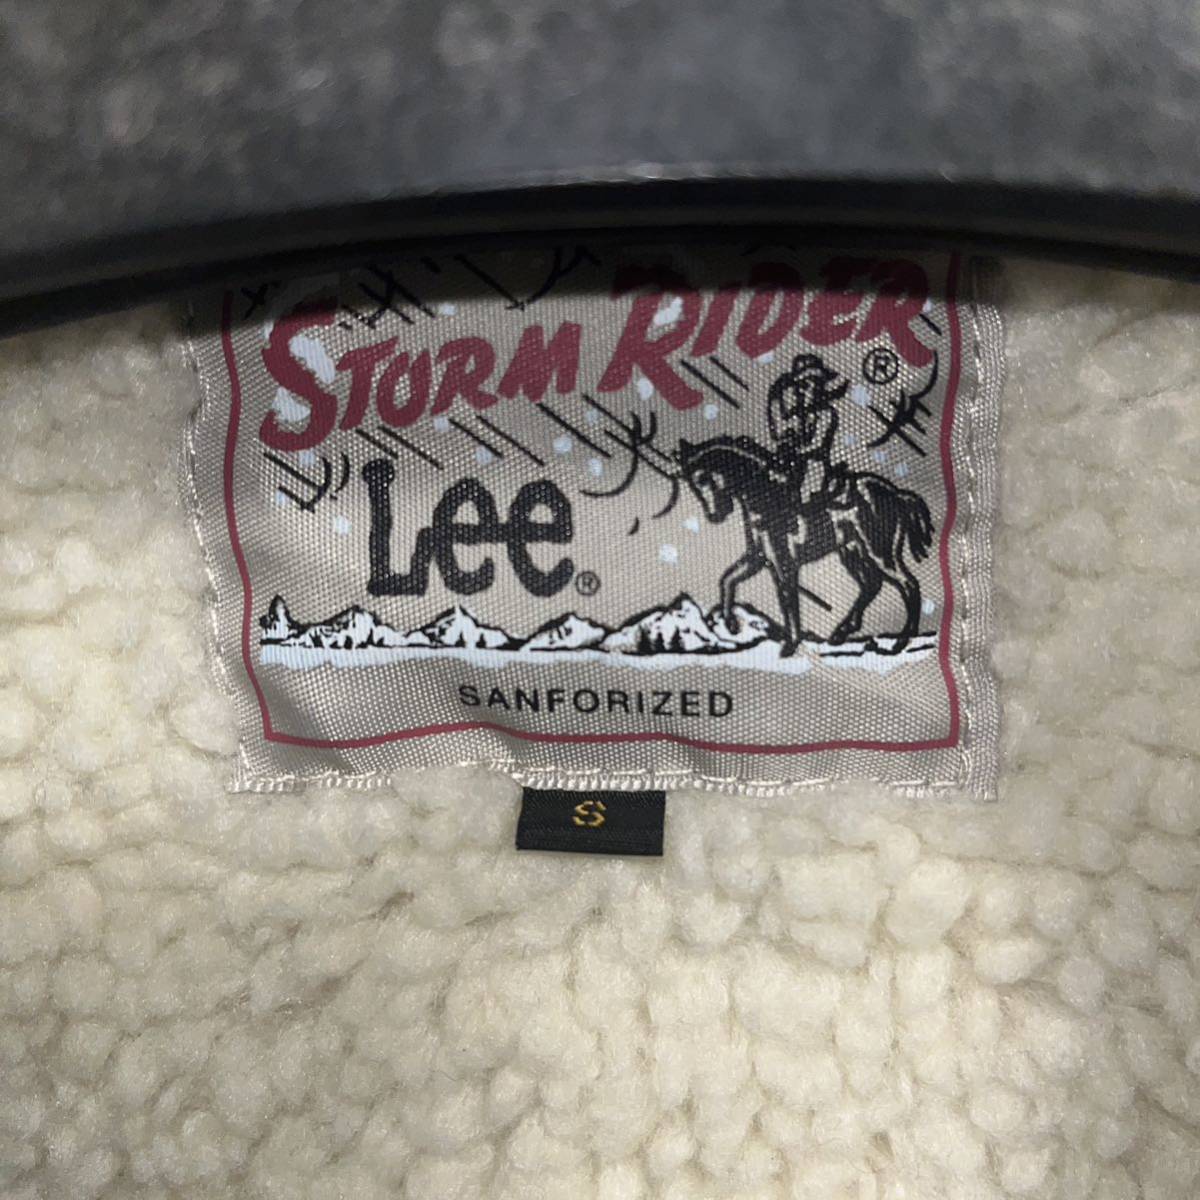  новый товар  бирка есть   Lee STORM RIDER ... пиджак 